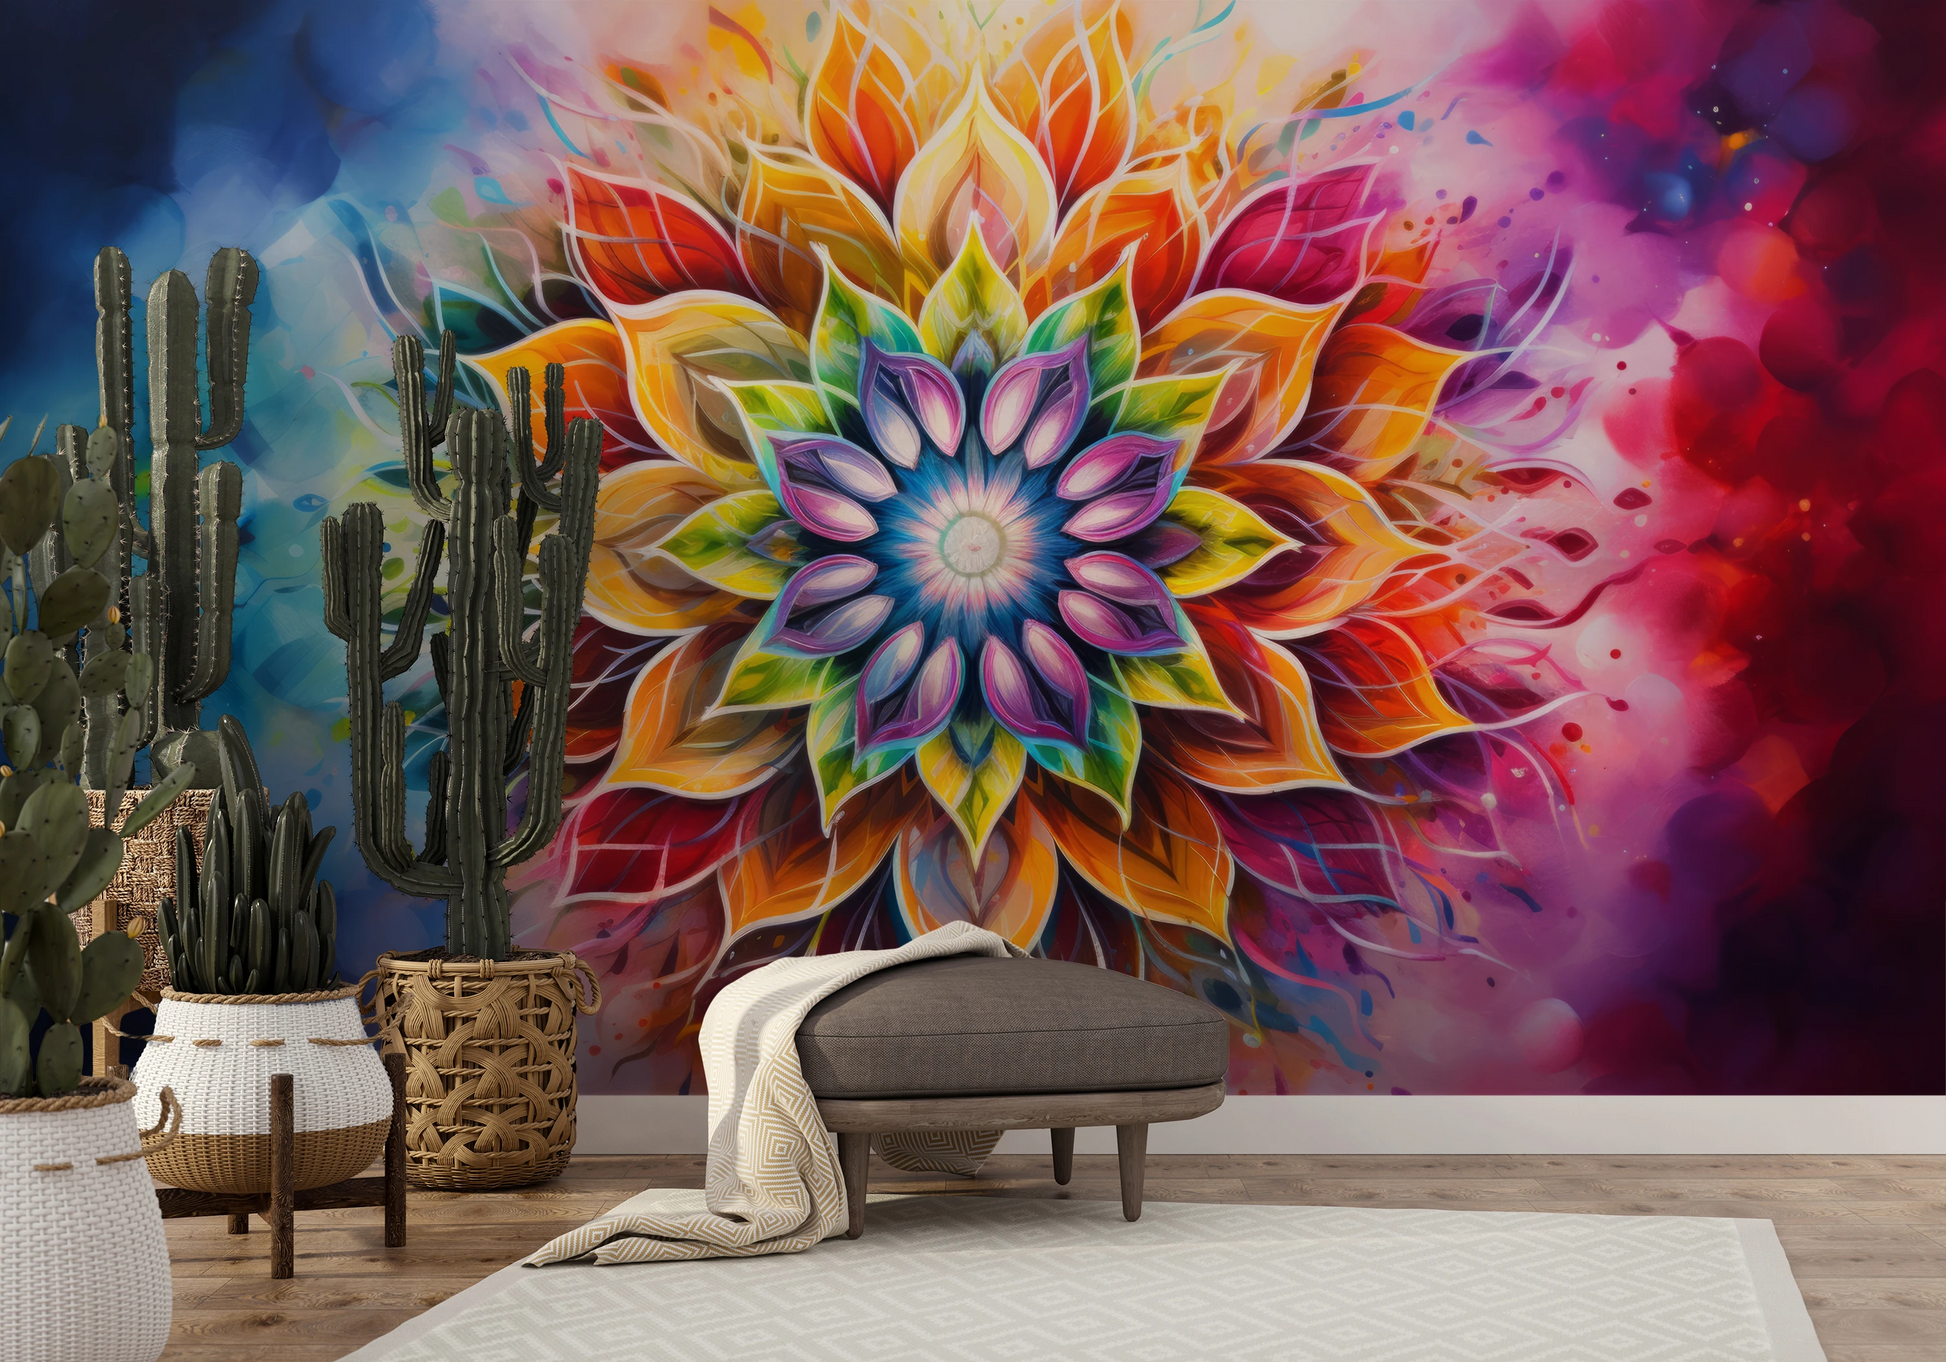 Fototapeta malowana o nazwie Vibrant Spirit pokazana w aranżacji wnętrza.